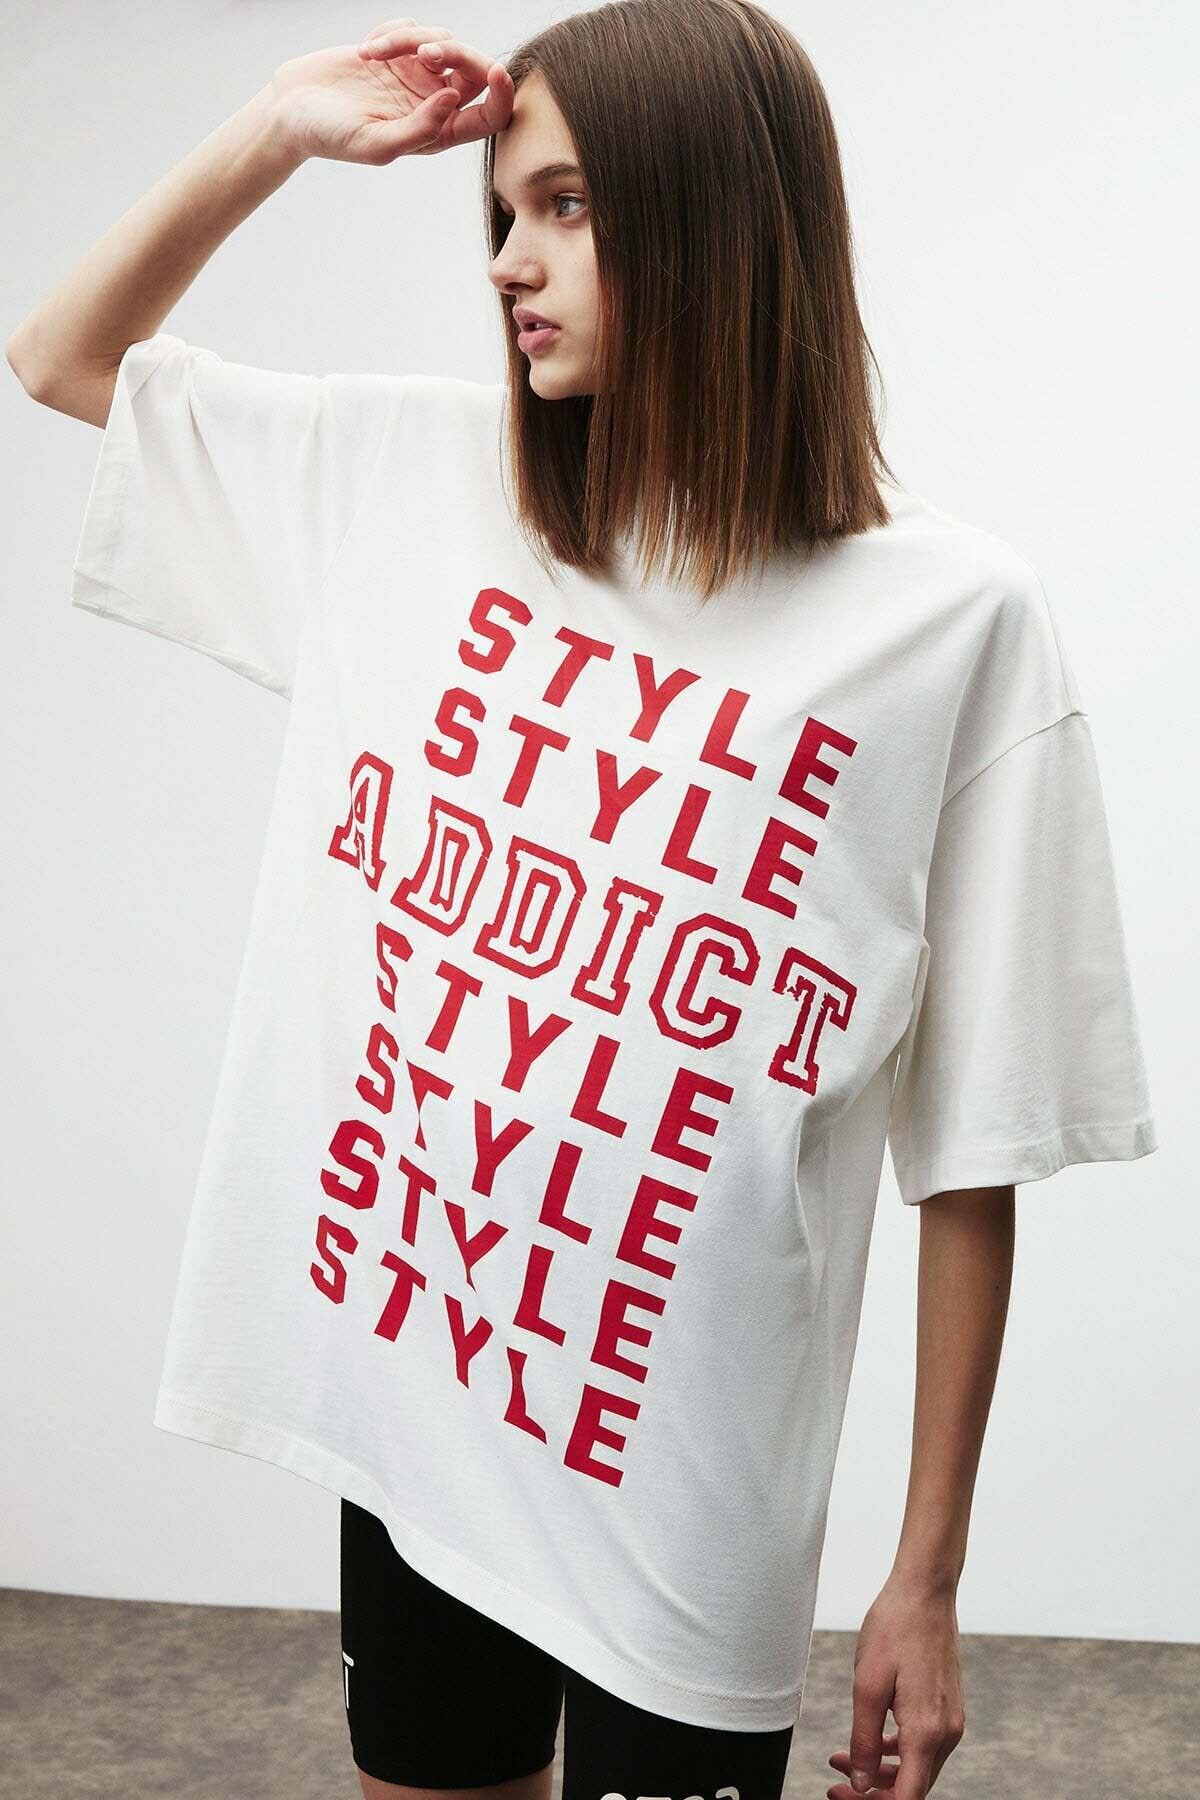 Louis Vuitton Erkek T-Shirt Modelleri, Fiyatları - Trendyol - Sayfa 3